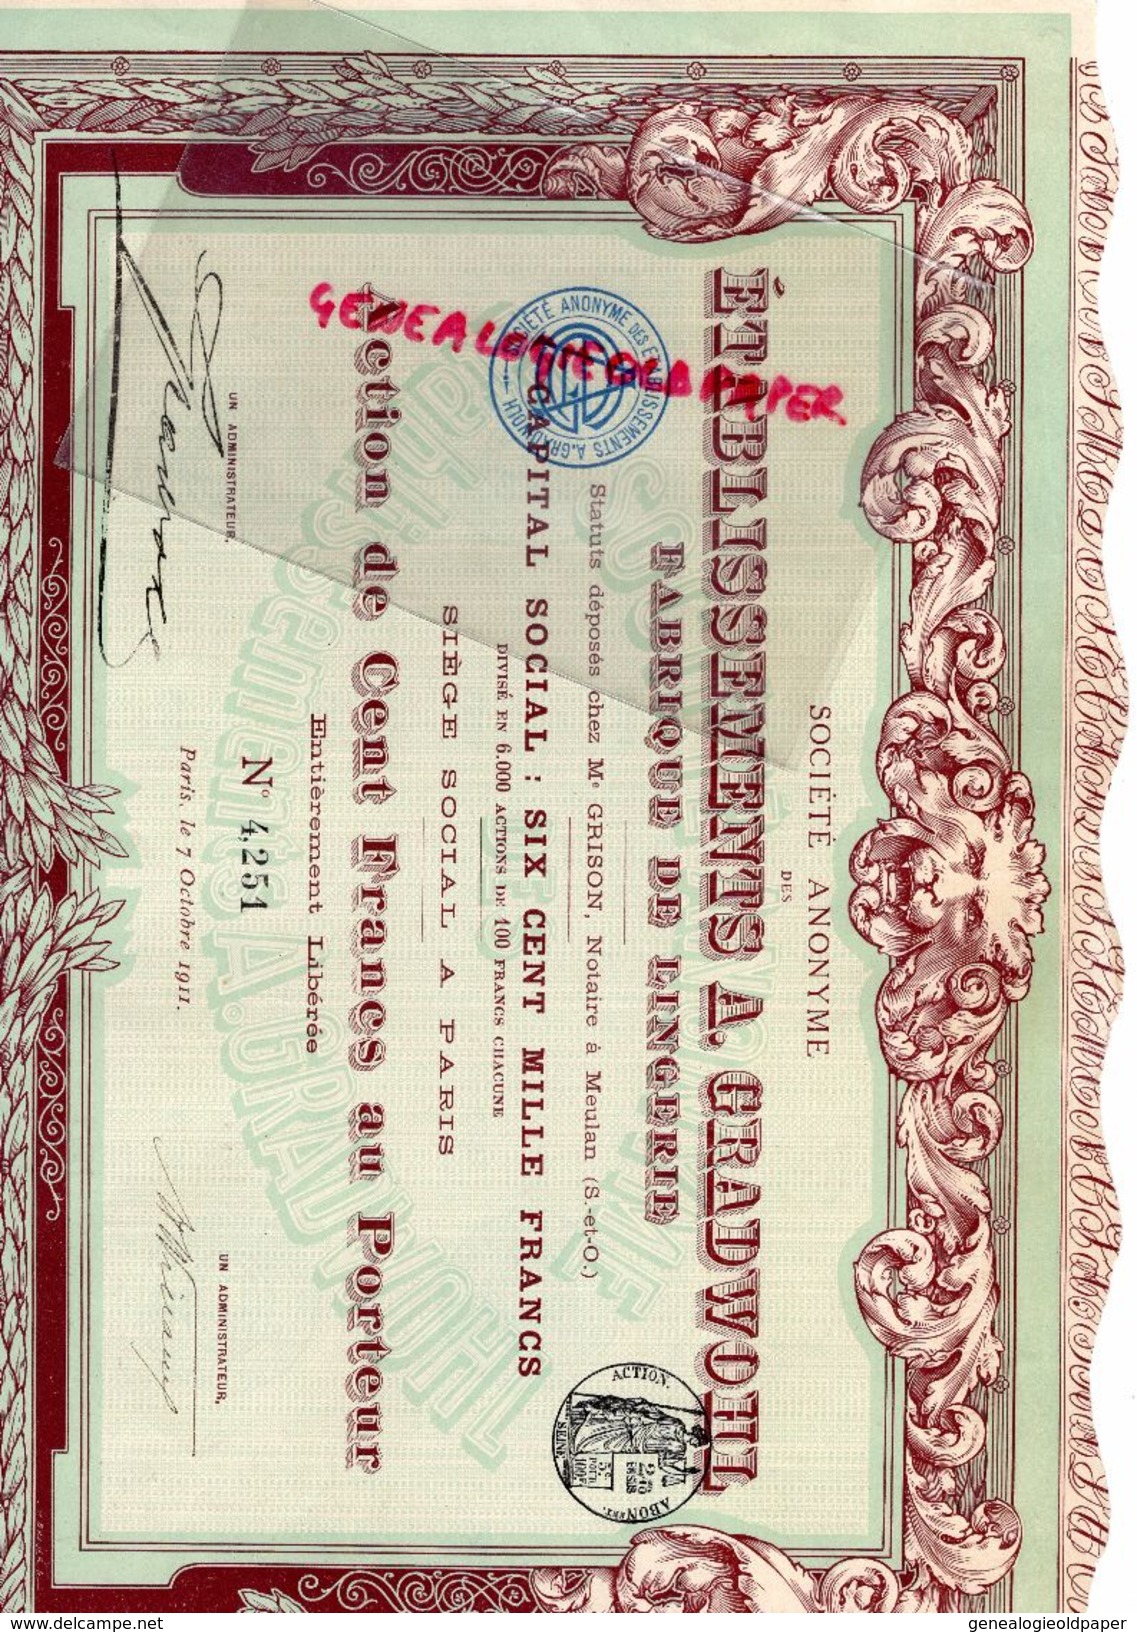 75- PARIS- ACTION CENT FRANCS ETABLISSEMENTS A. GRADWOHL FABRIQUE LINGERIE-1911- IMPRIMERIE RICHARD - Textile